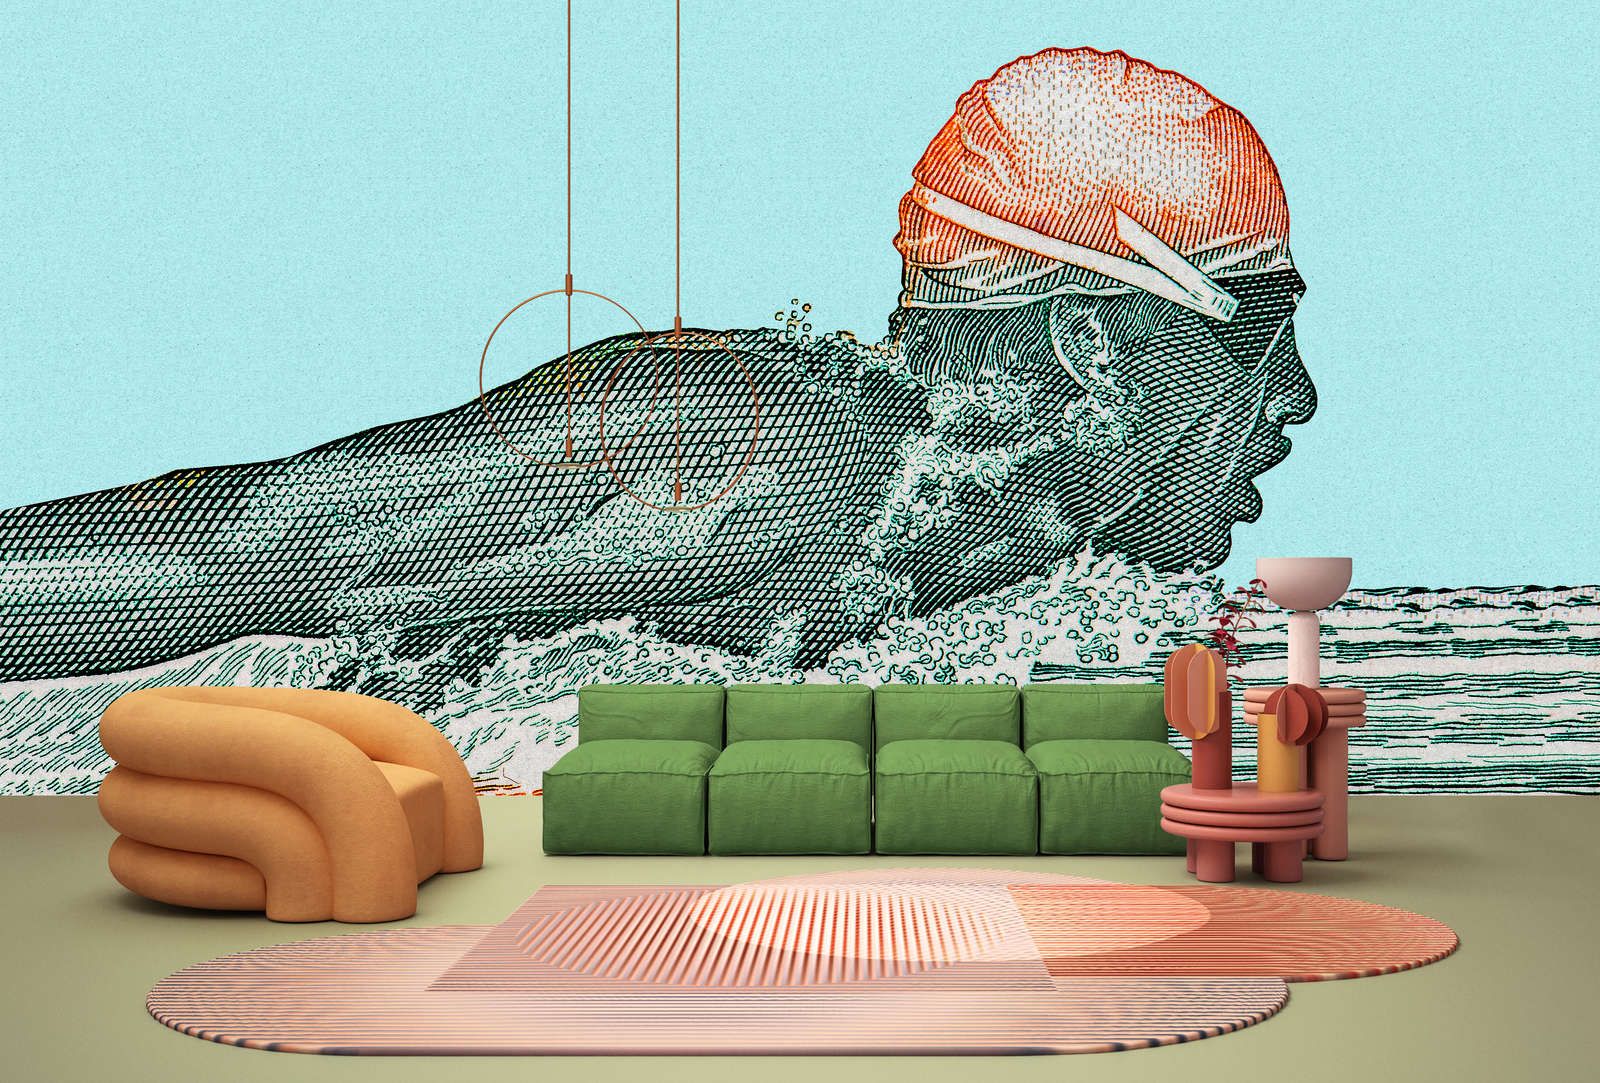             Fotomural »aquaman« - nadador en diseño pixelado - petróleo con textura de papel kraft | Tela no tejida premium lisa, ligeramente brillante
        